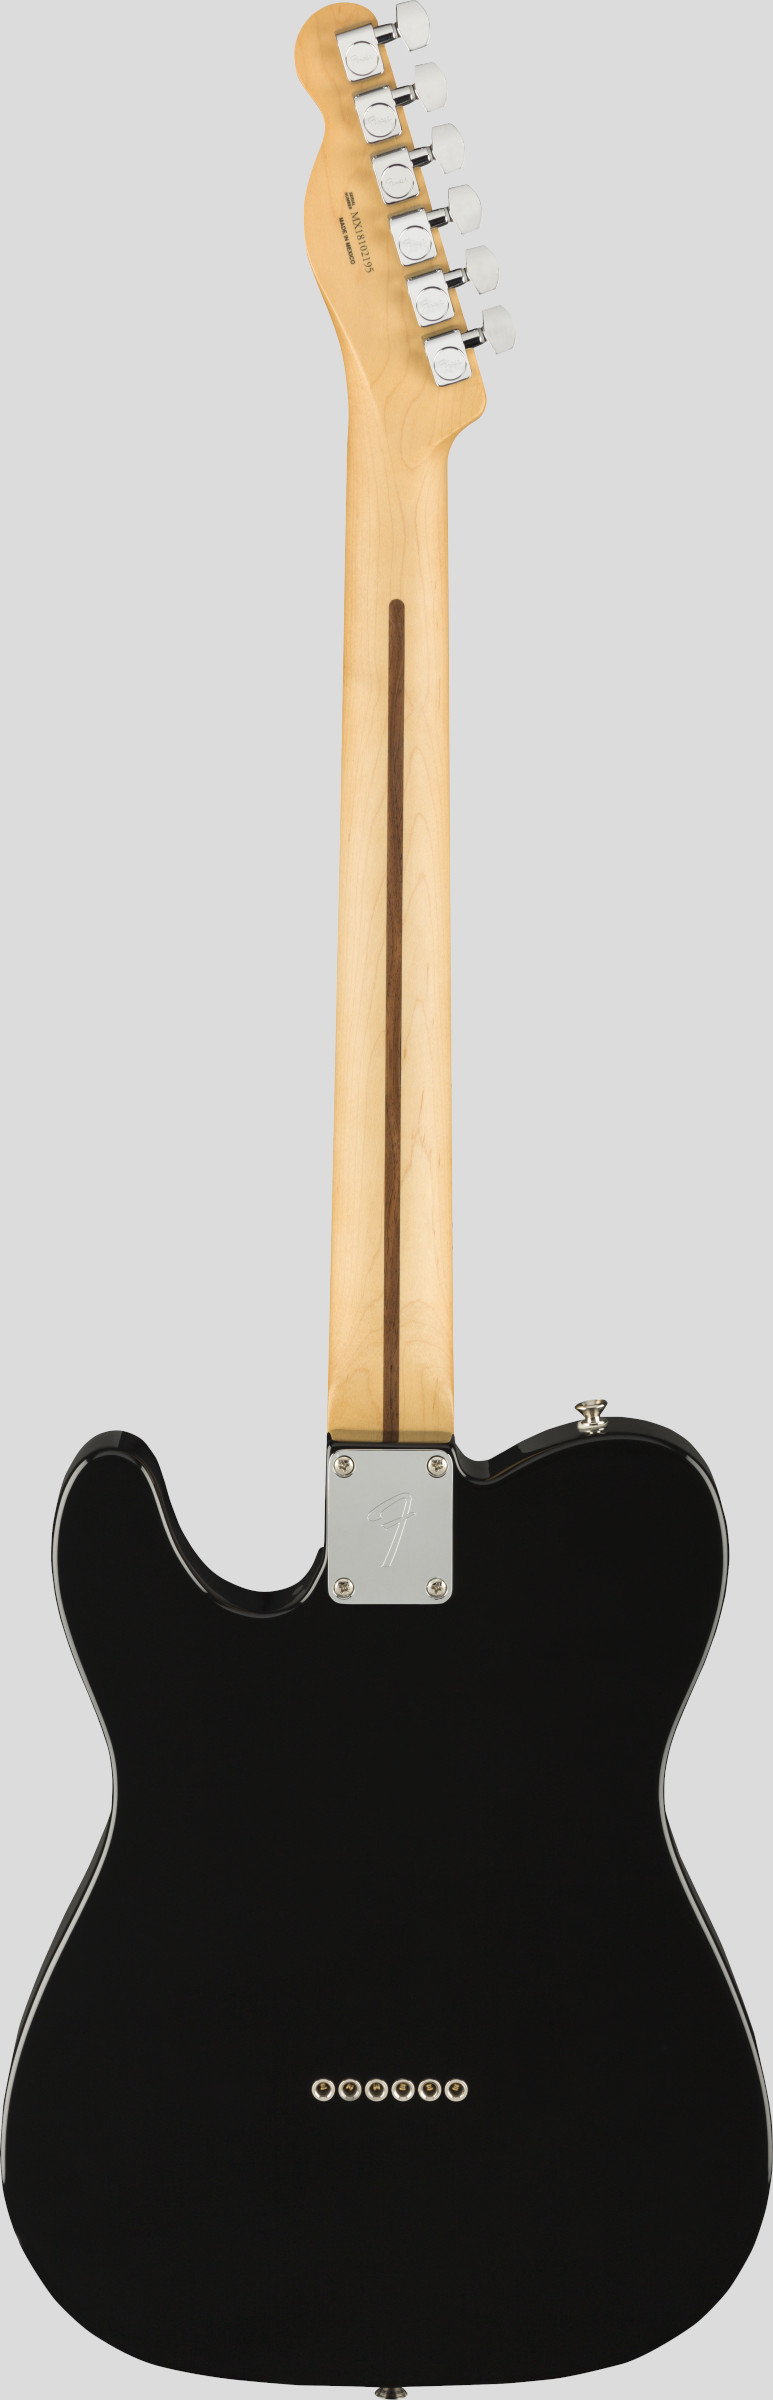 Fender Player Telecaster Black 2